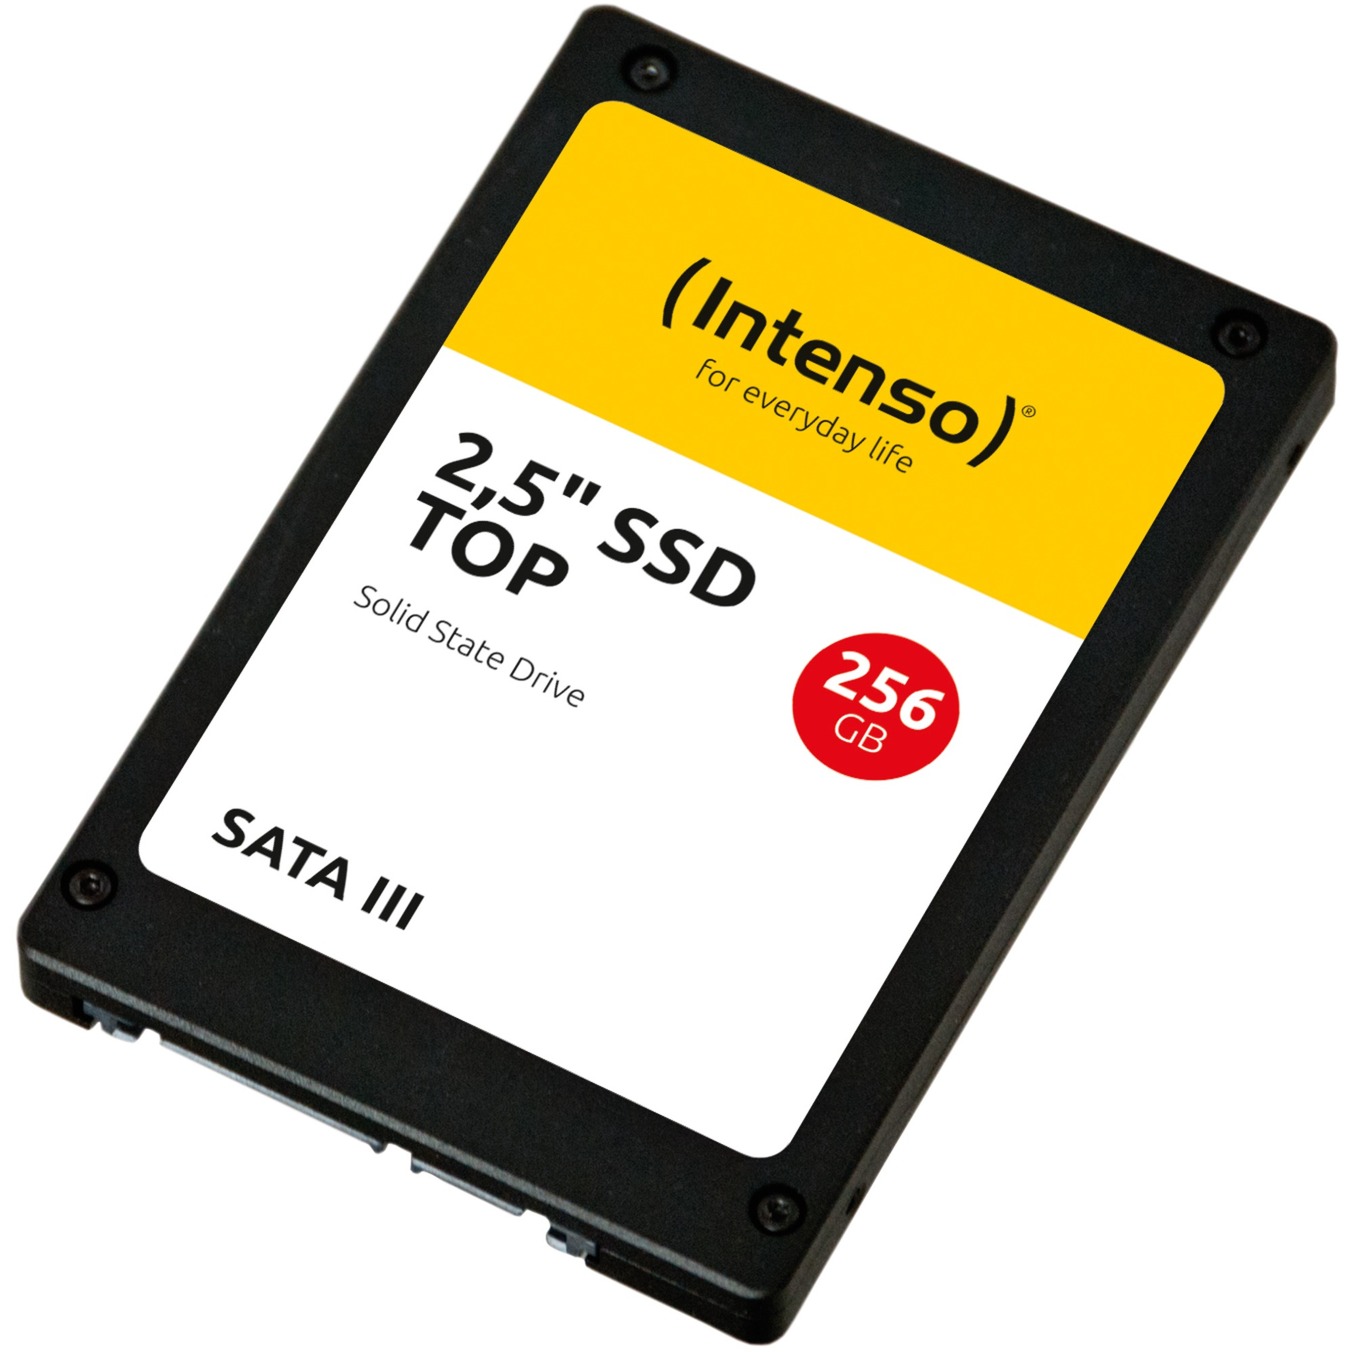 Image of Alternate - TOP SSD 256 GB online einkaufen bei Alternate